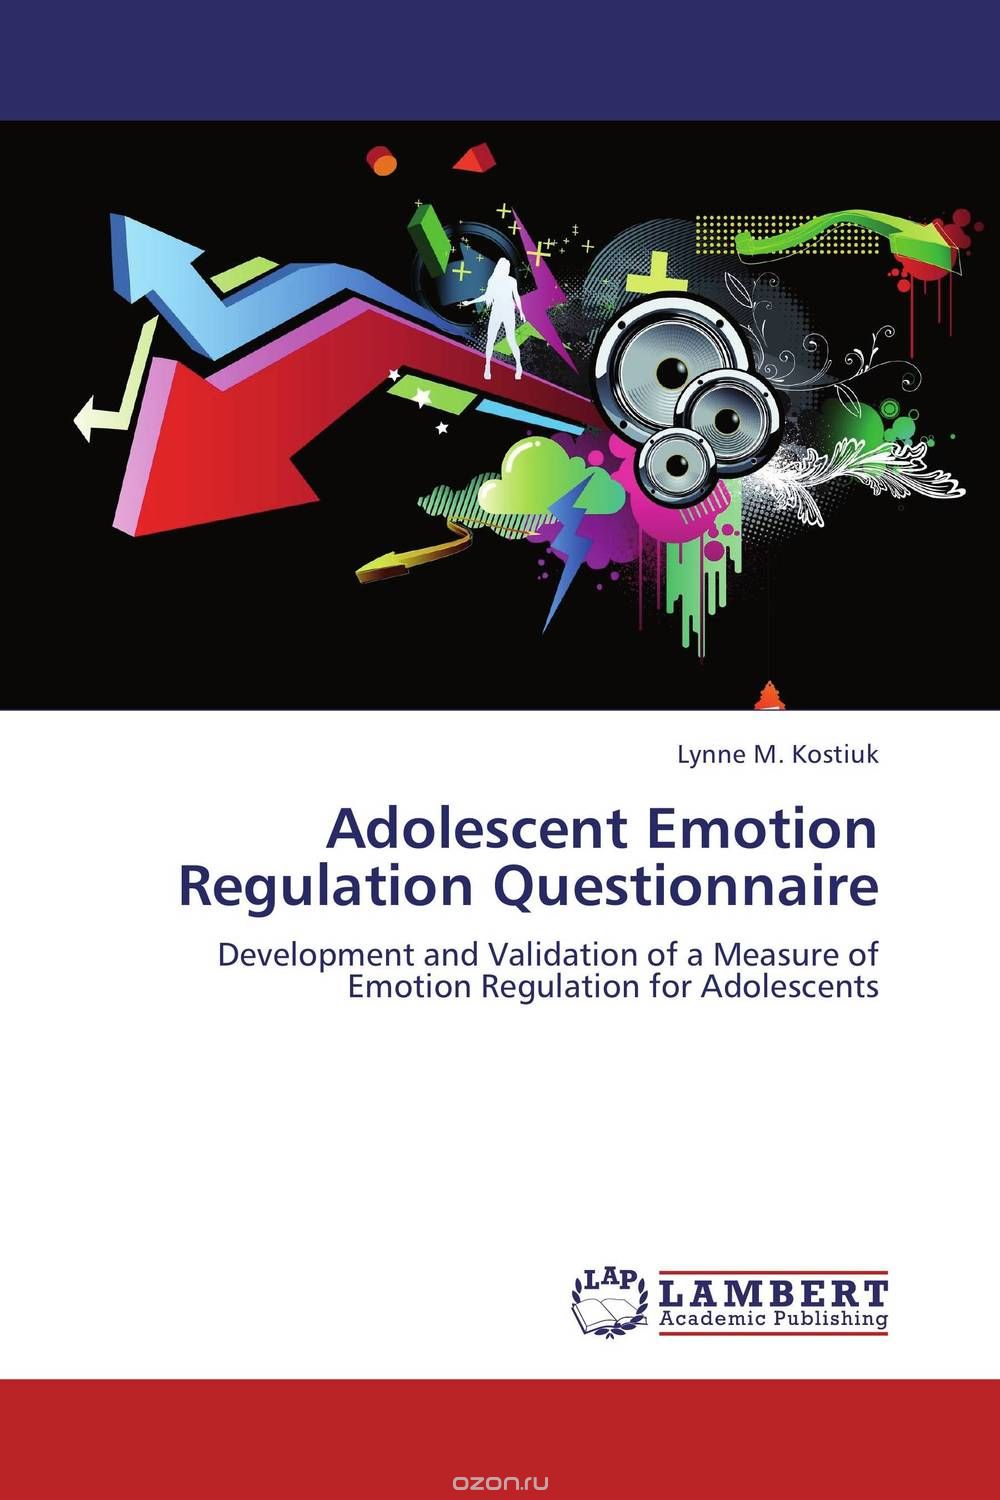 Скачать книгу "Adolescent Emotion Regulation Questionnaire"